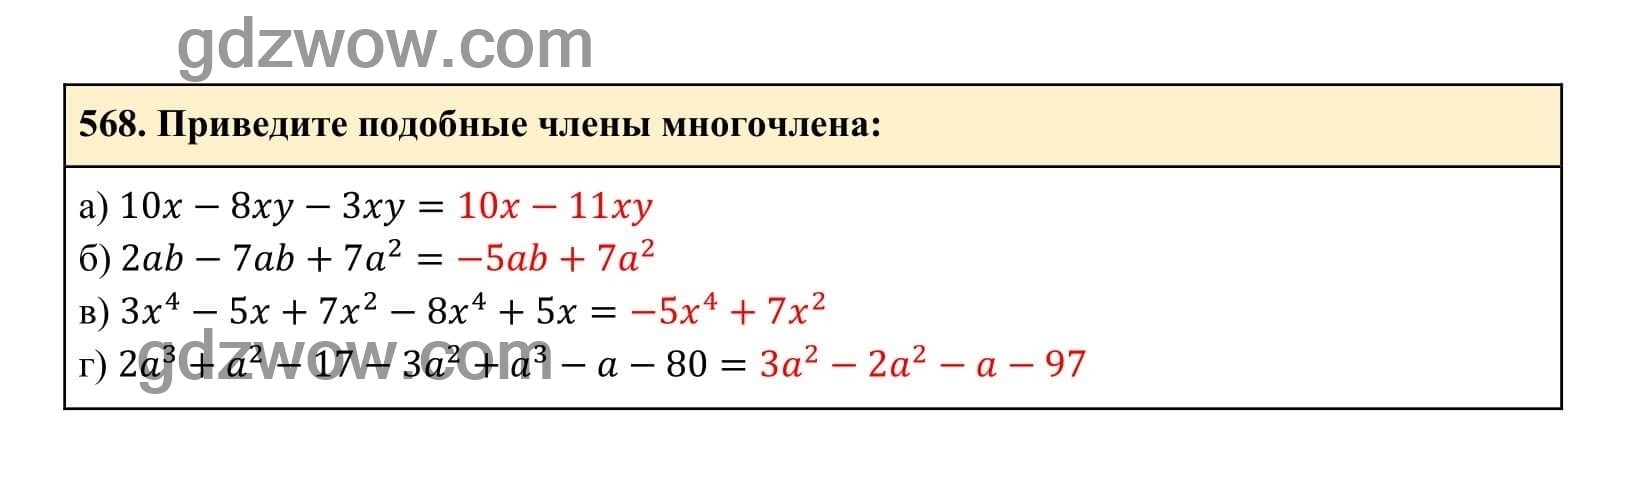 Упражнение 568 - ГДЗ по Алгебре 7 класс Учебник Макарычев (решебник) - GDZwow